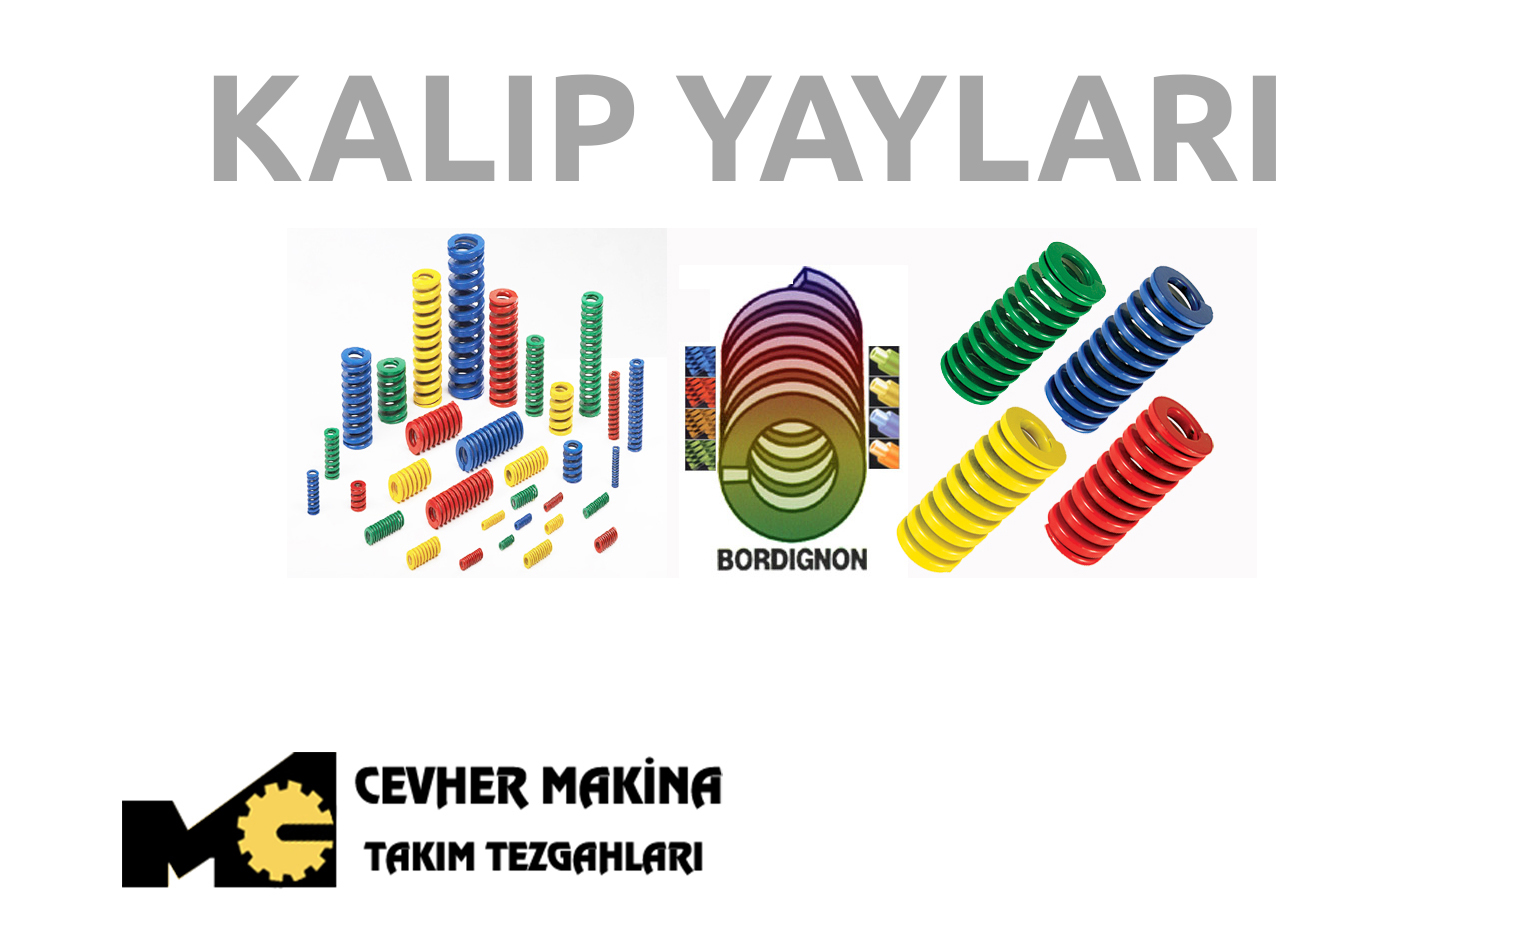 Kalip Yaylari